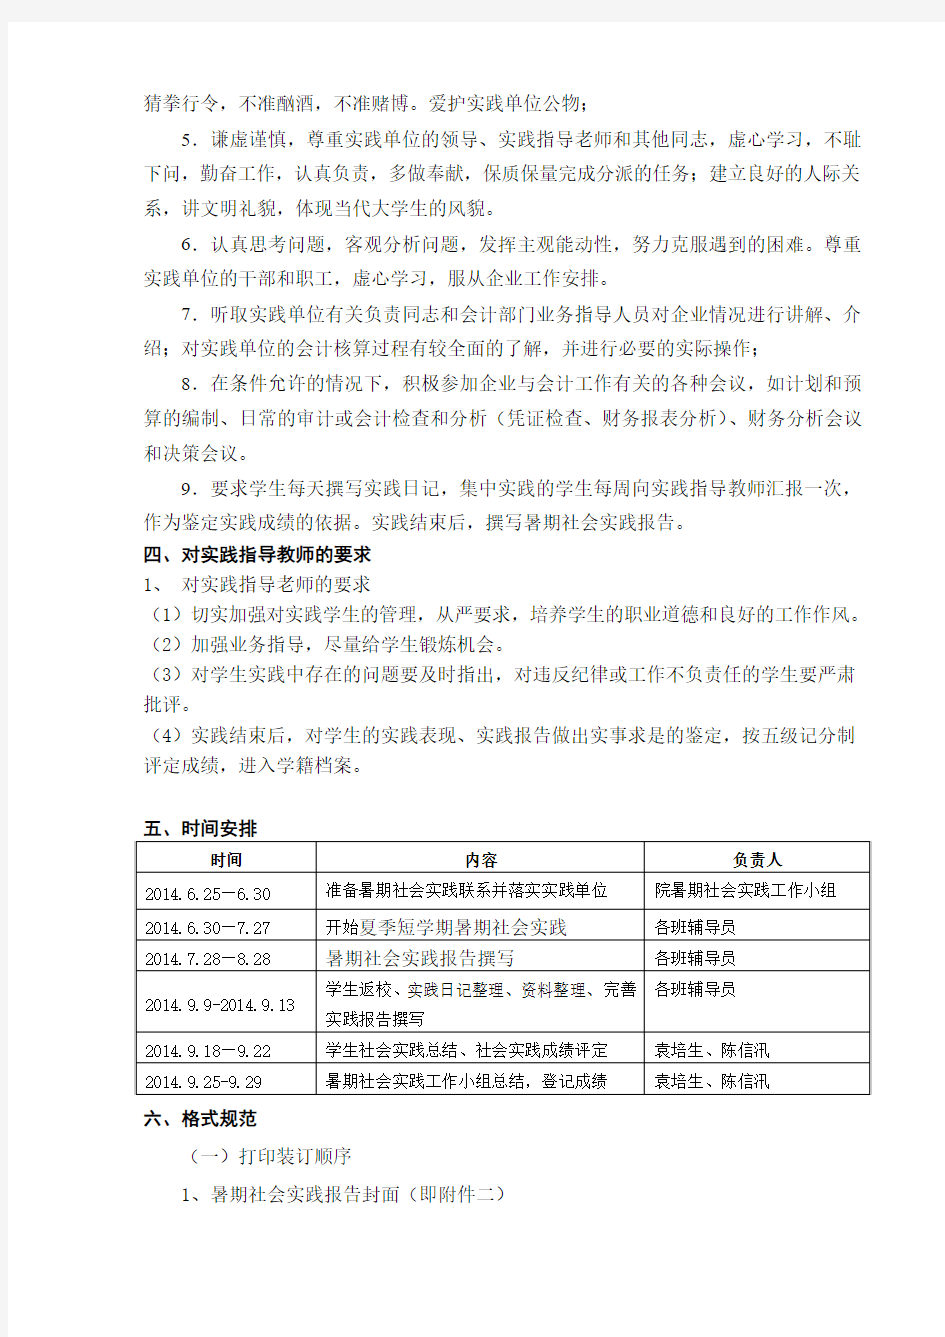 重庆工商大学派斯学院会计学院2014年暑期社会实践指导书(最终定稿)